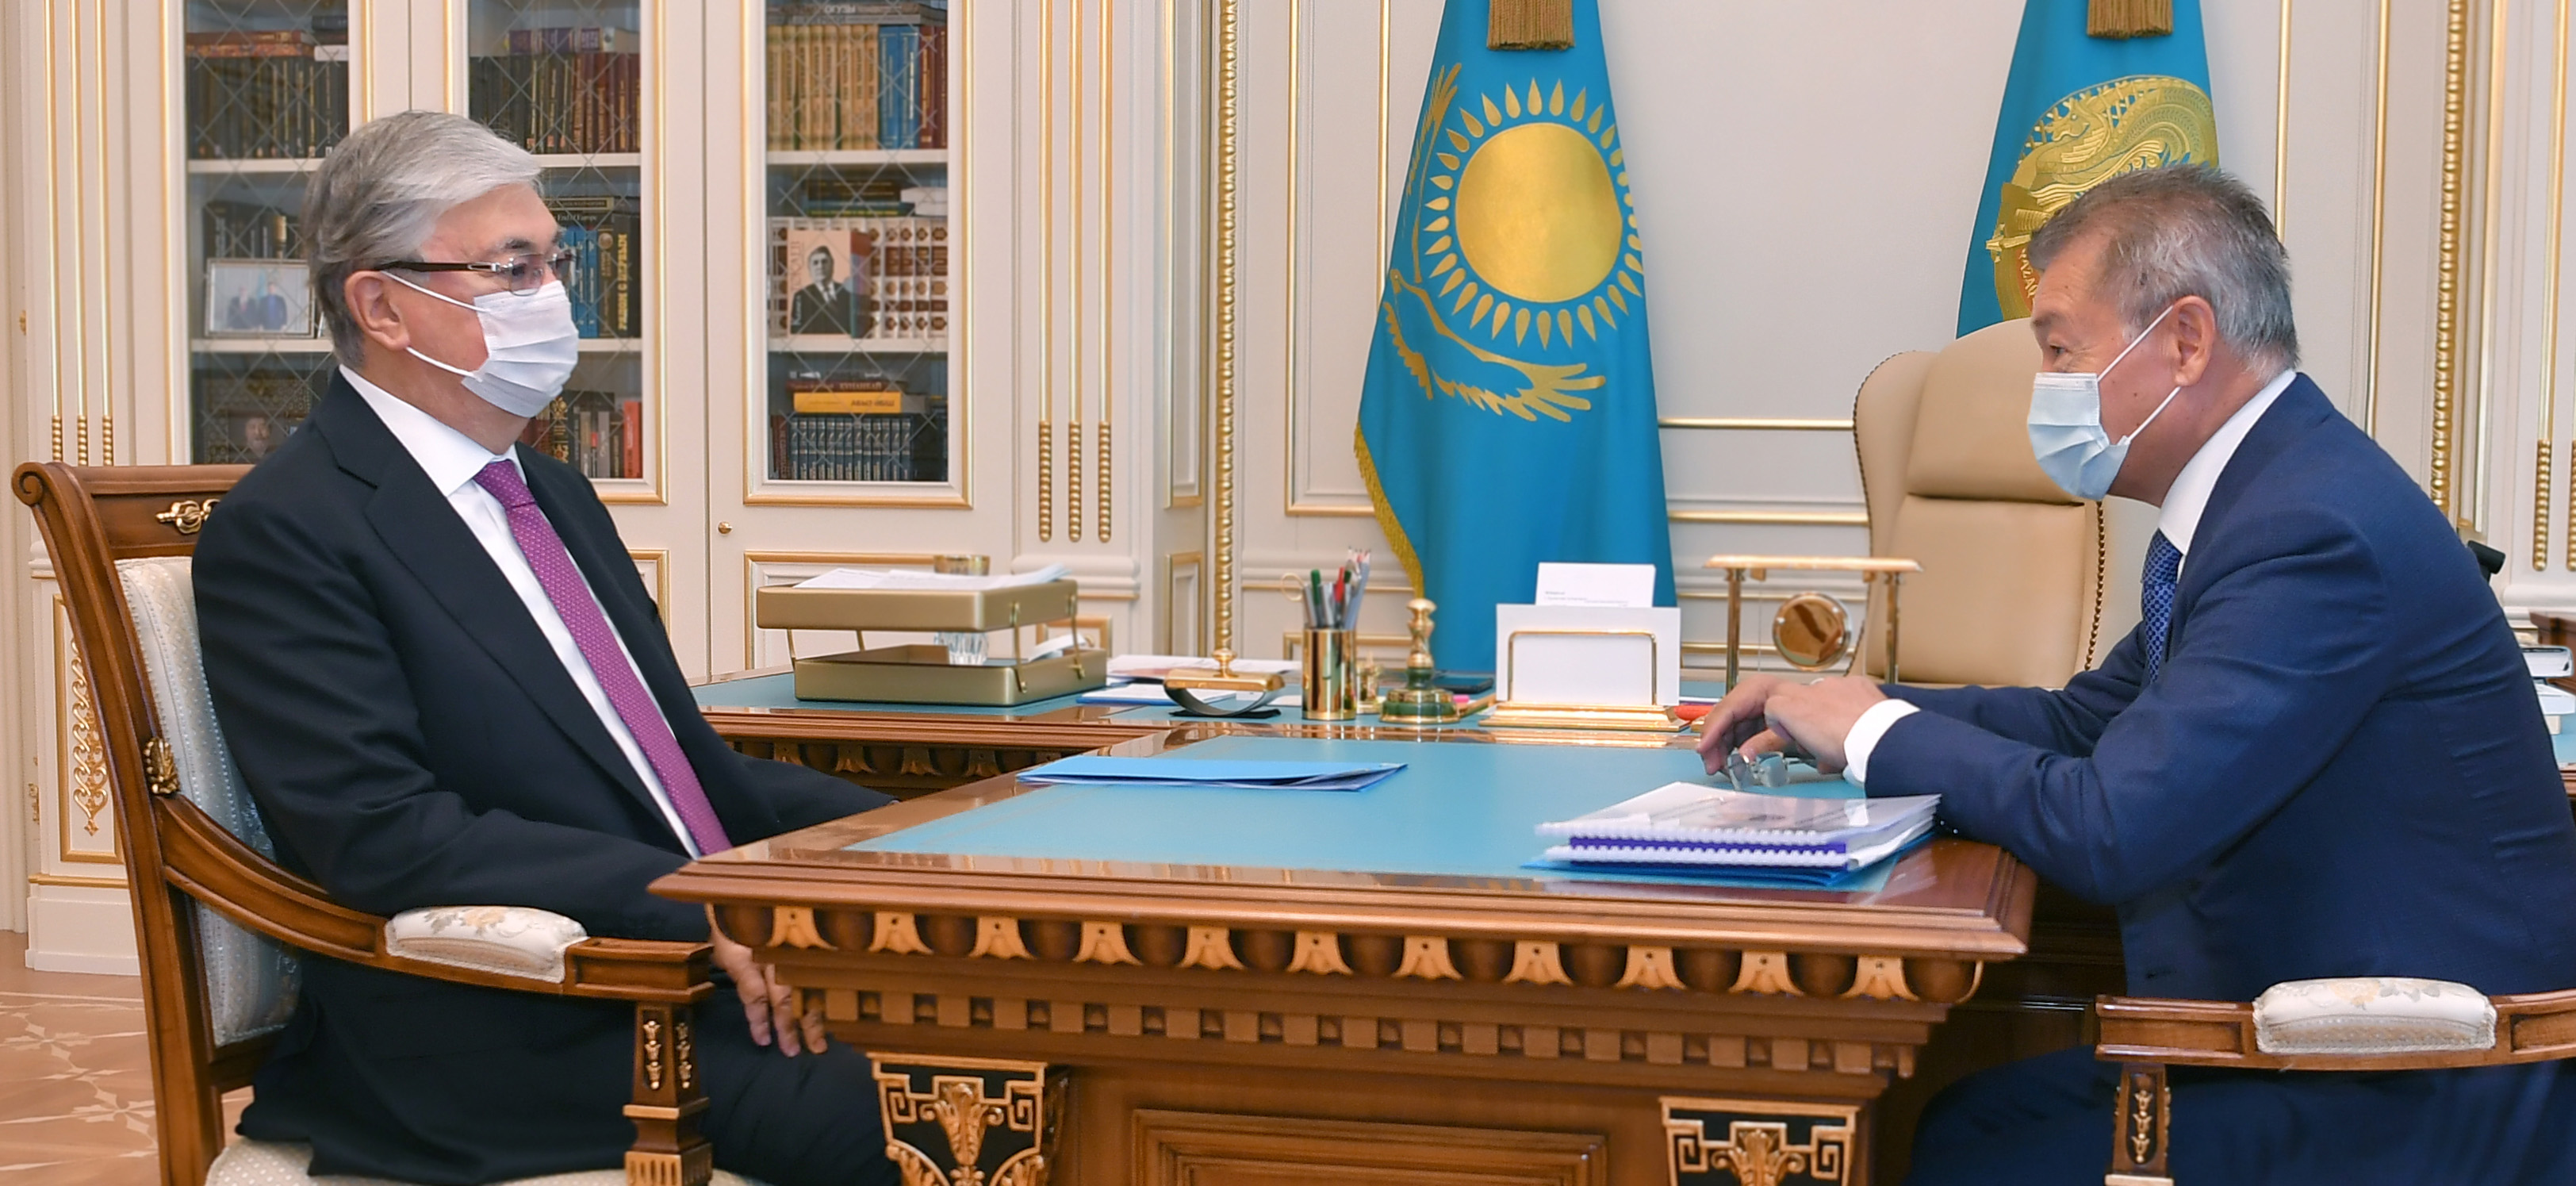 Токаев дал ряд поручений главам Актюбинской и Восточно-Казахстанской областей по дальнейшему развитию регионов